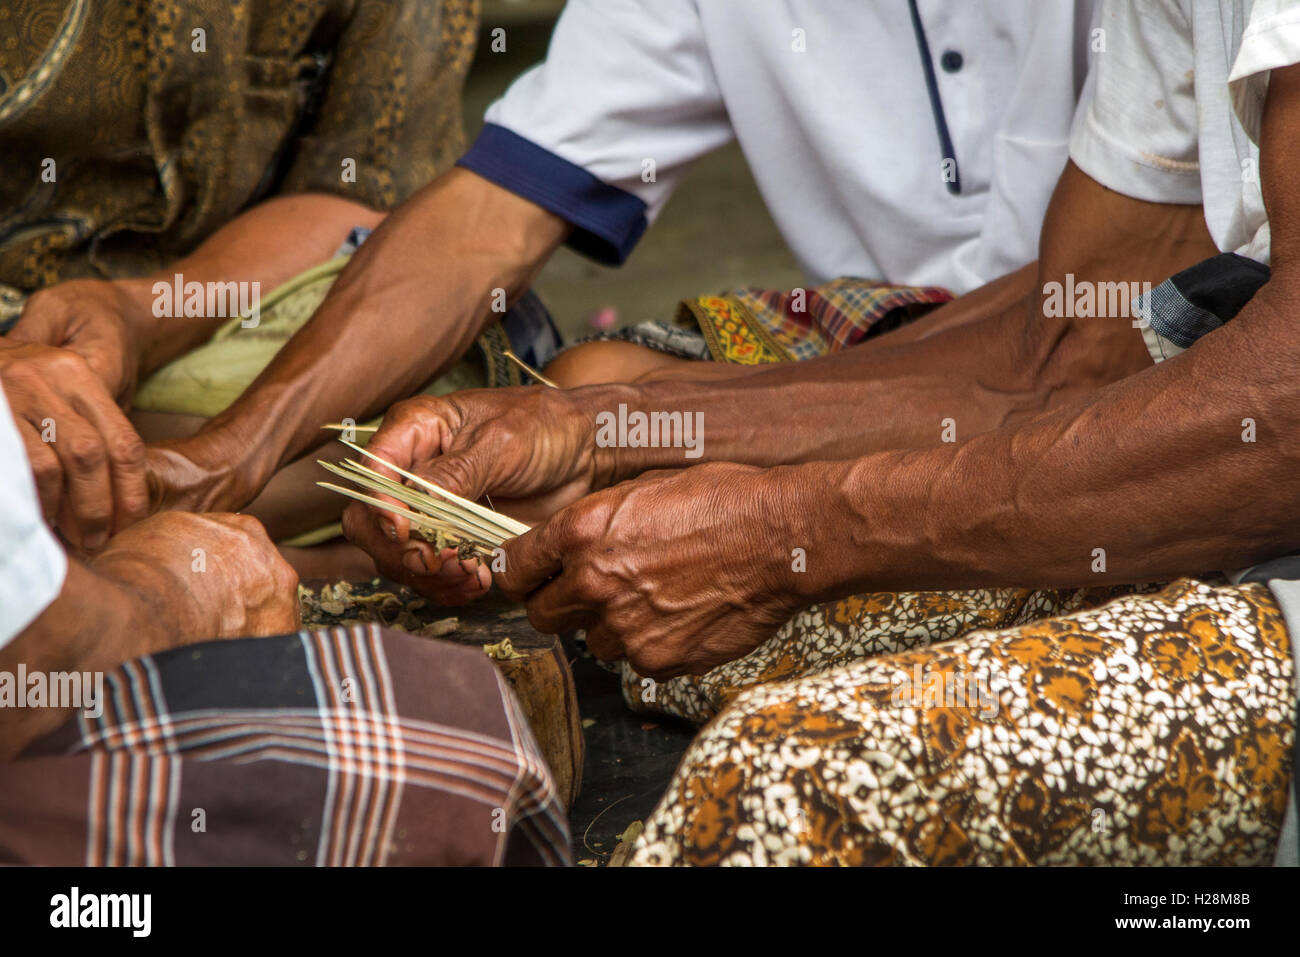 Indonesien, Bali, Tampaksiring, Gunung Kawi Tempel, Hände der Männer Kuningan Festival Satay vorbereiten Stockfoto